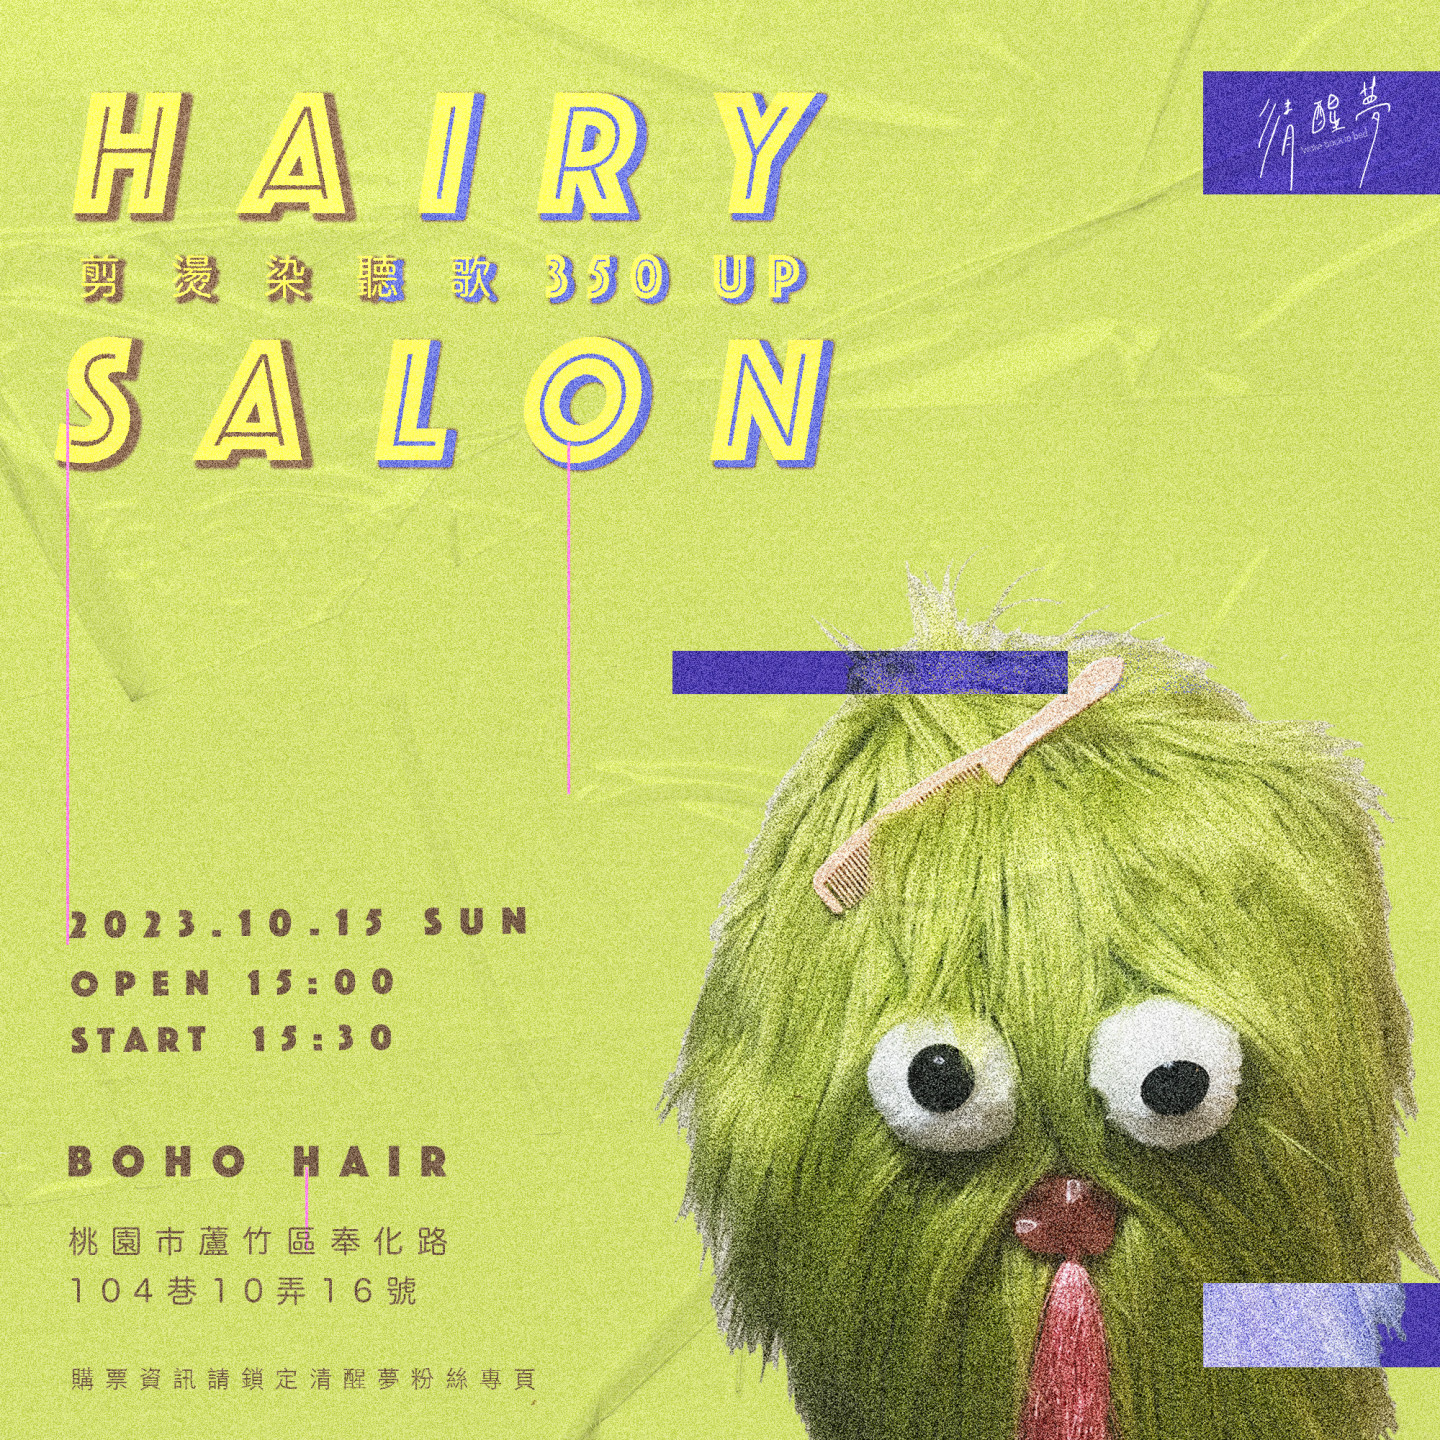 清醒夢_Hairy Salon 演出資訊